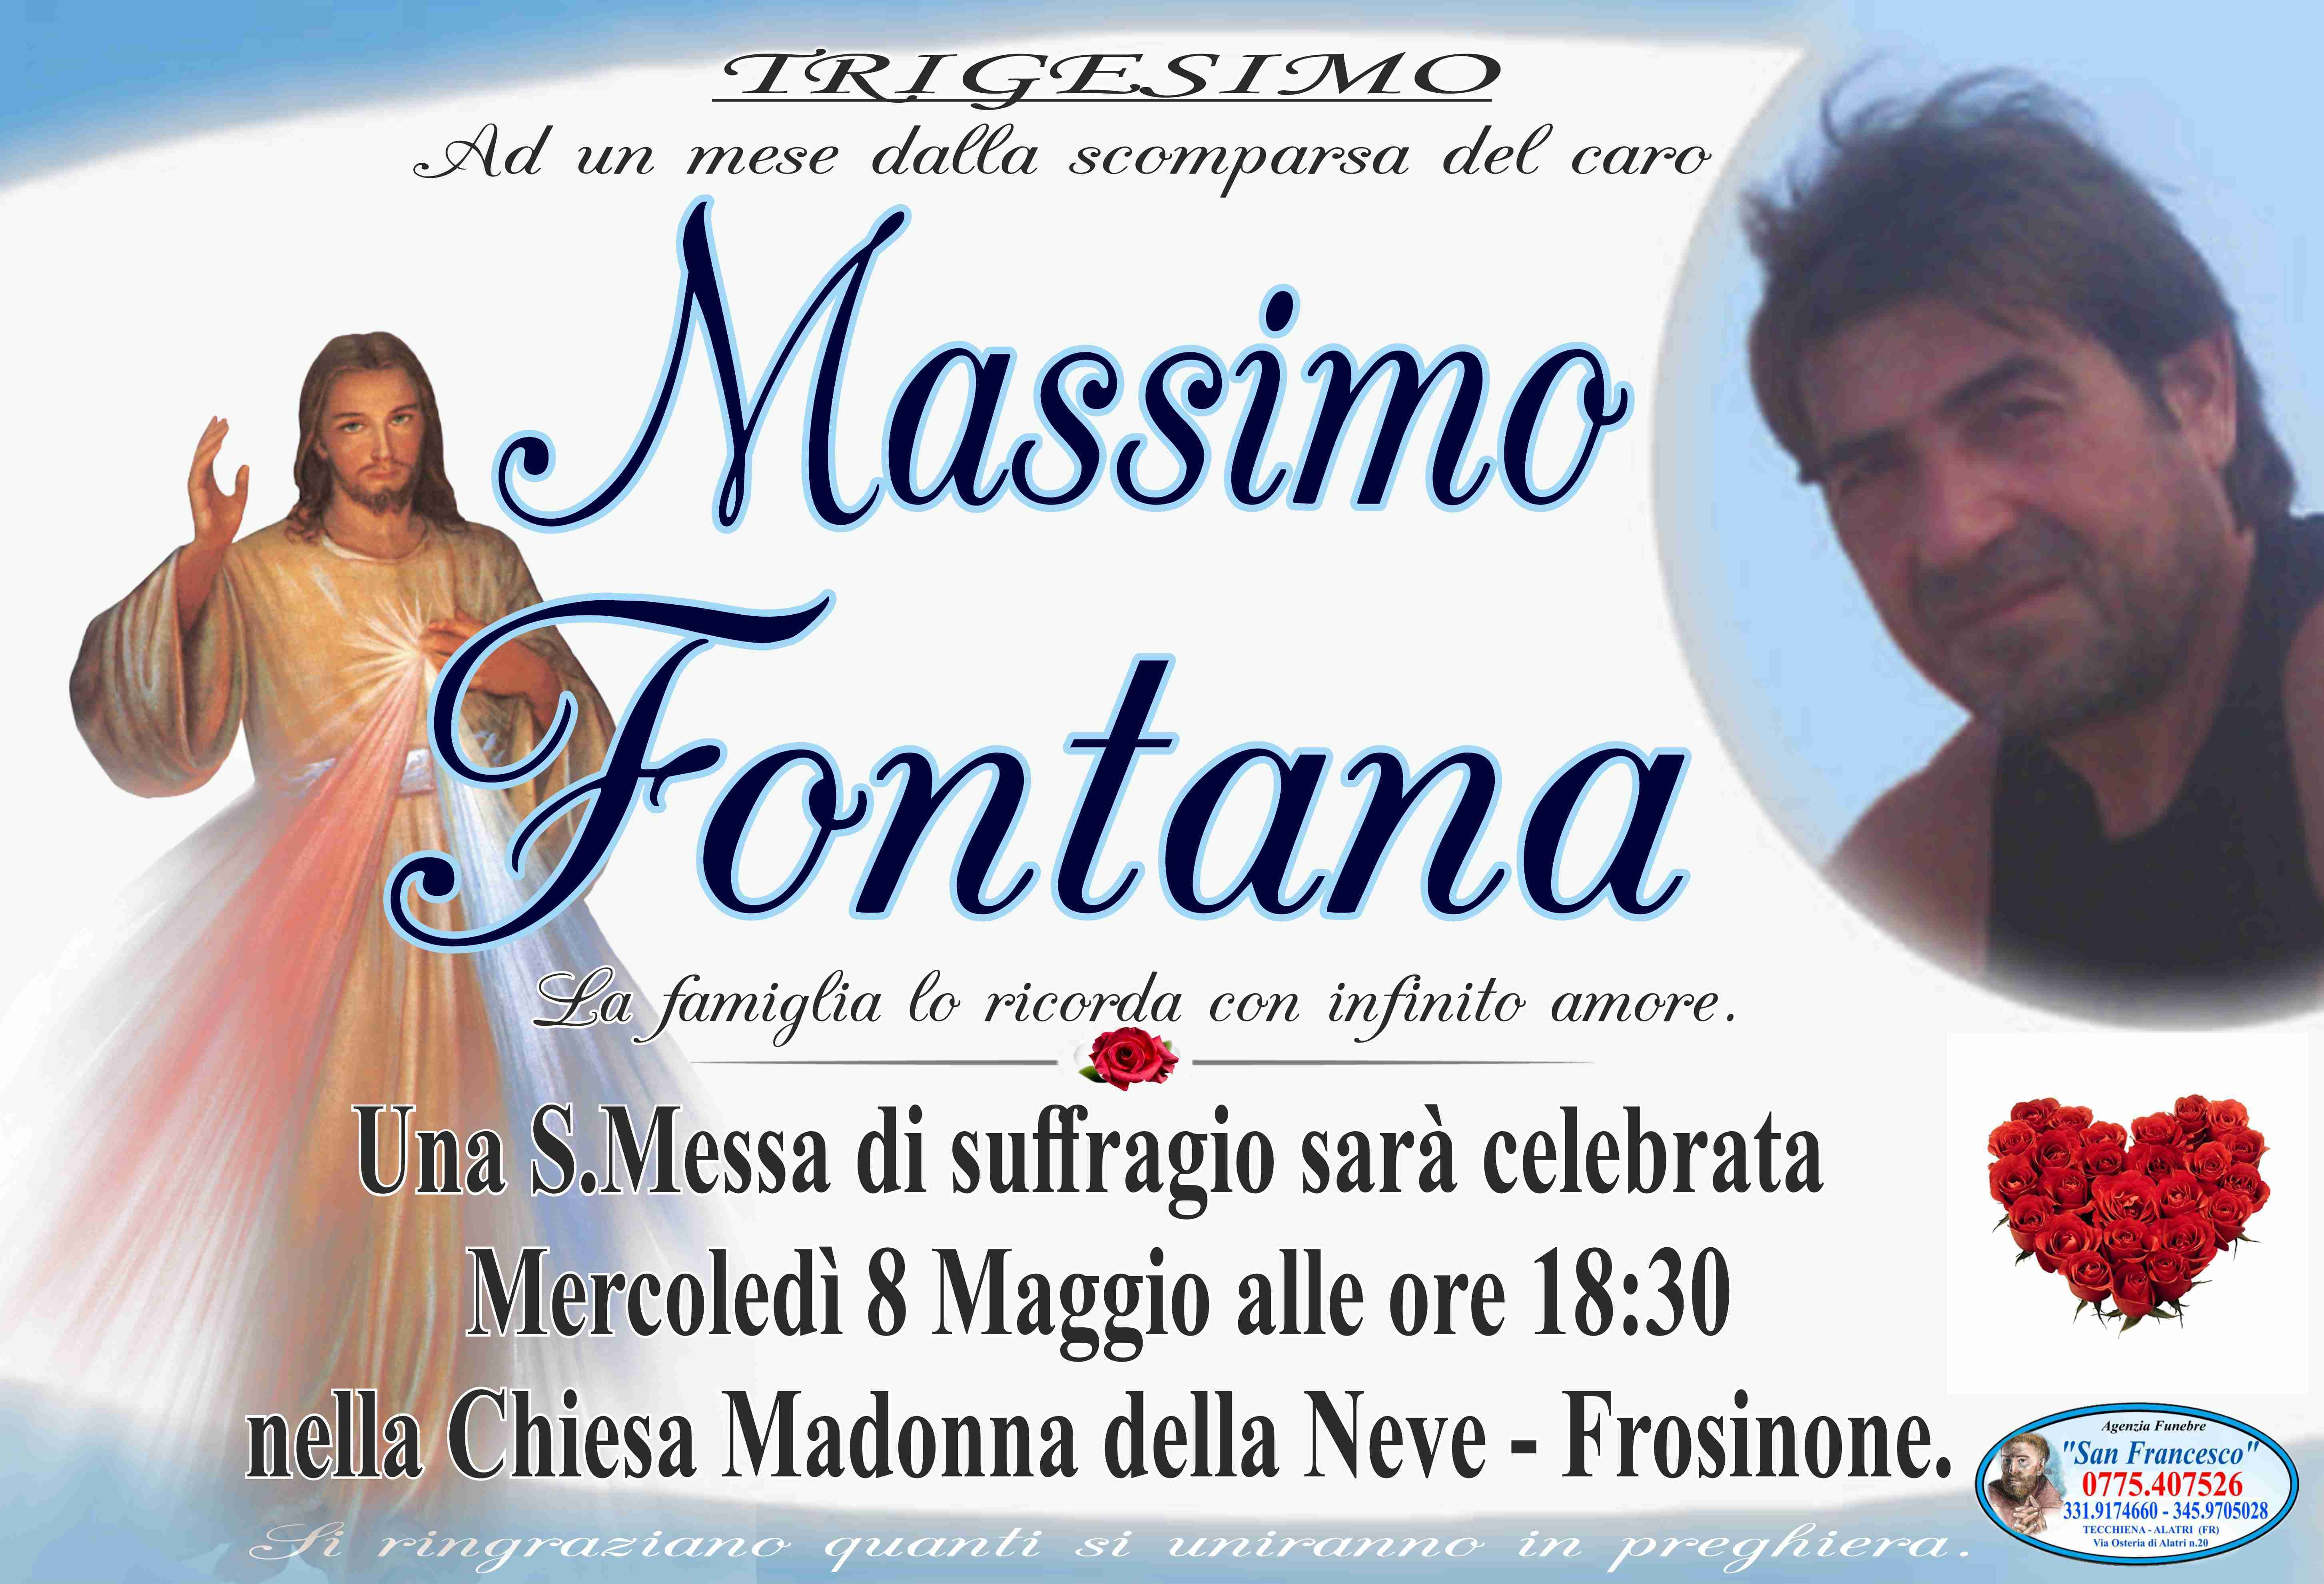 Massimo Fontana